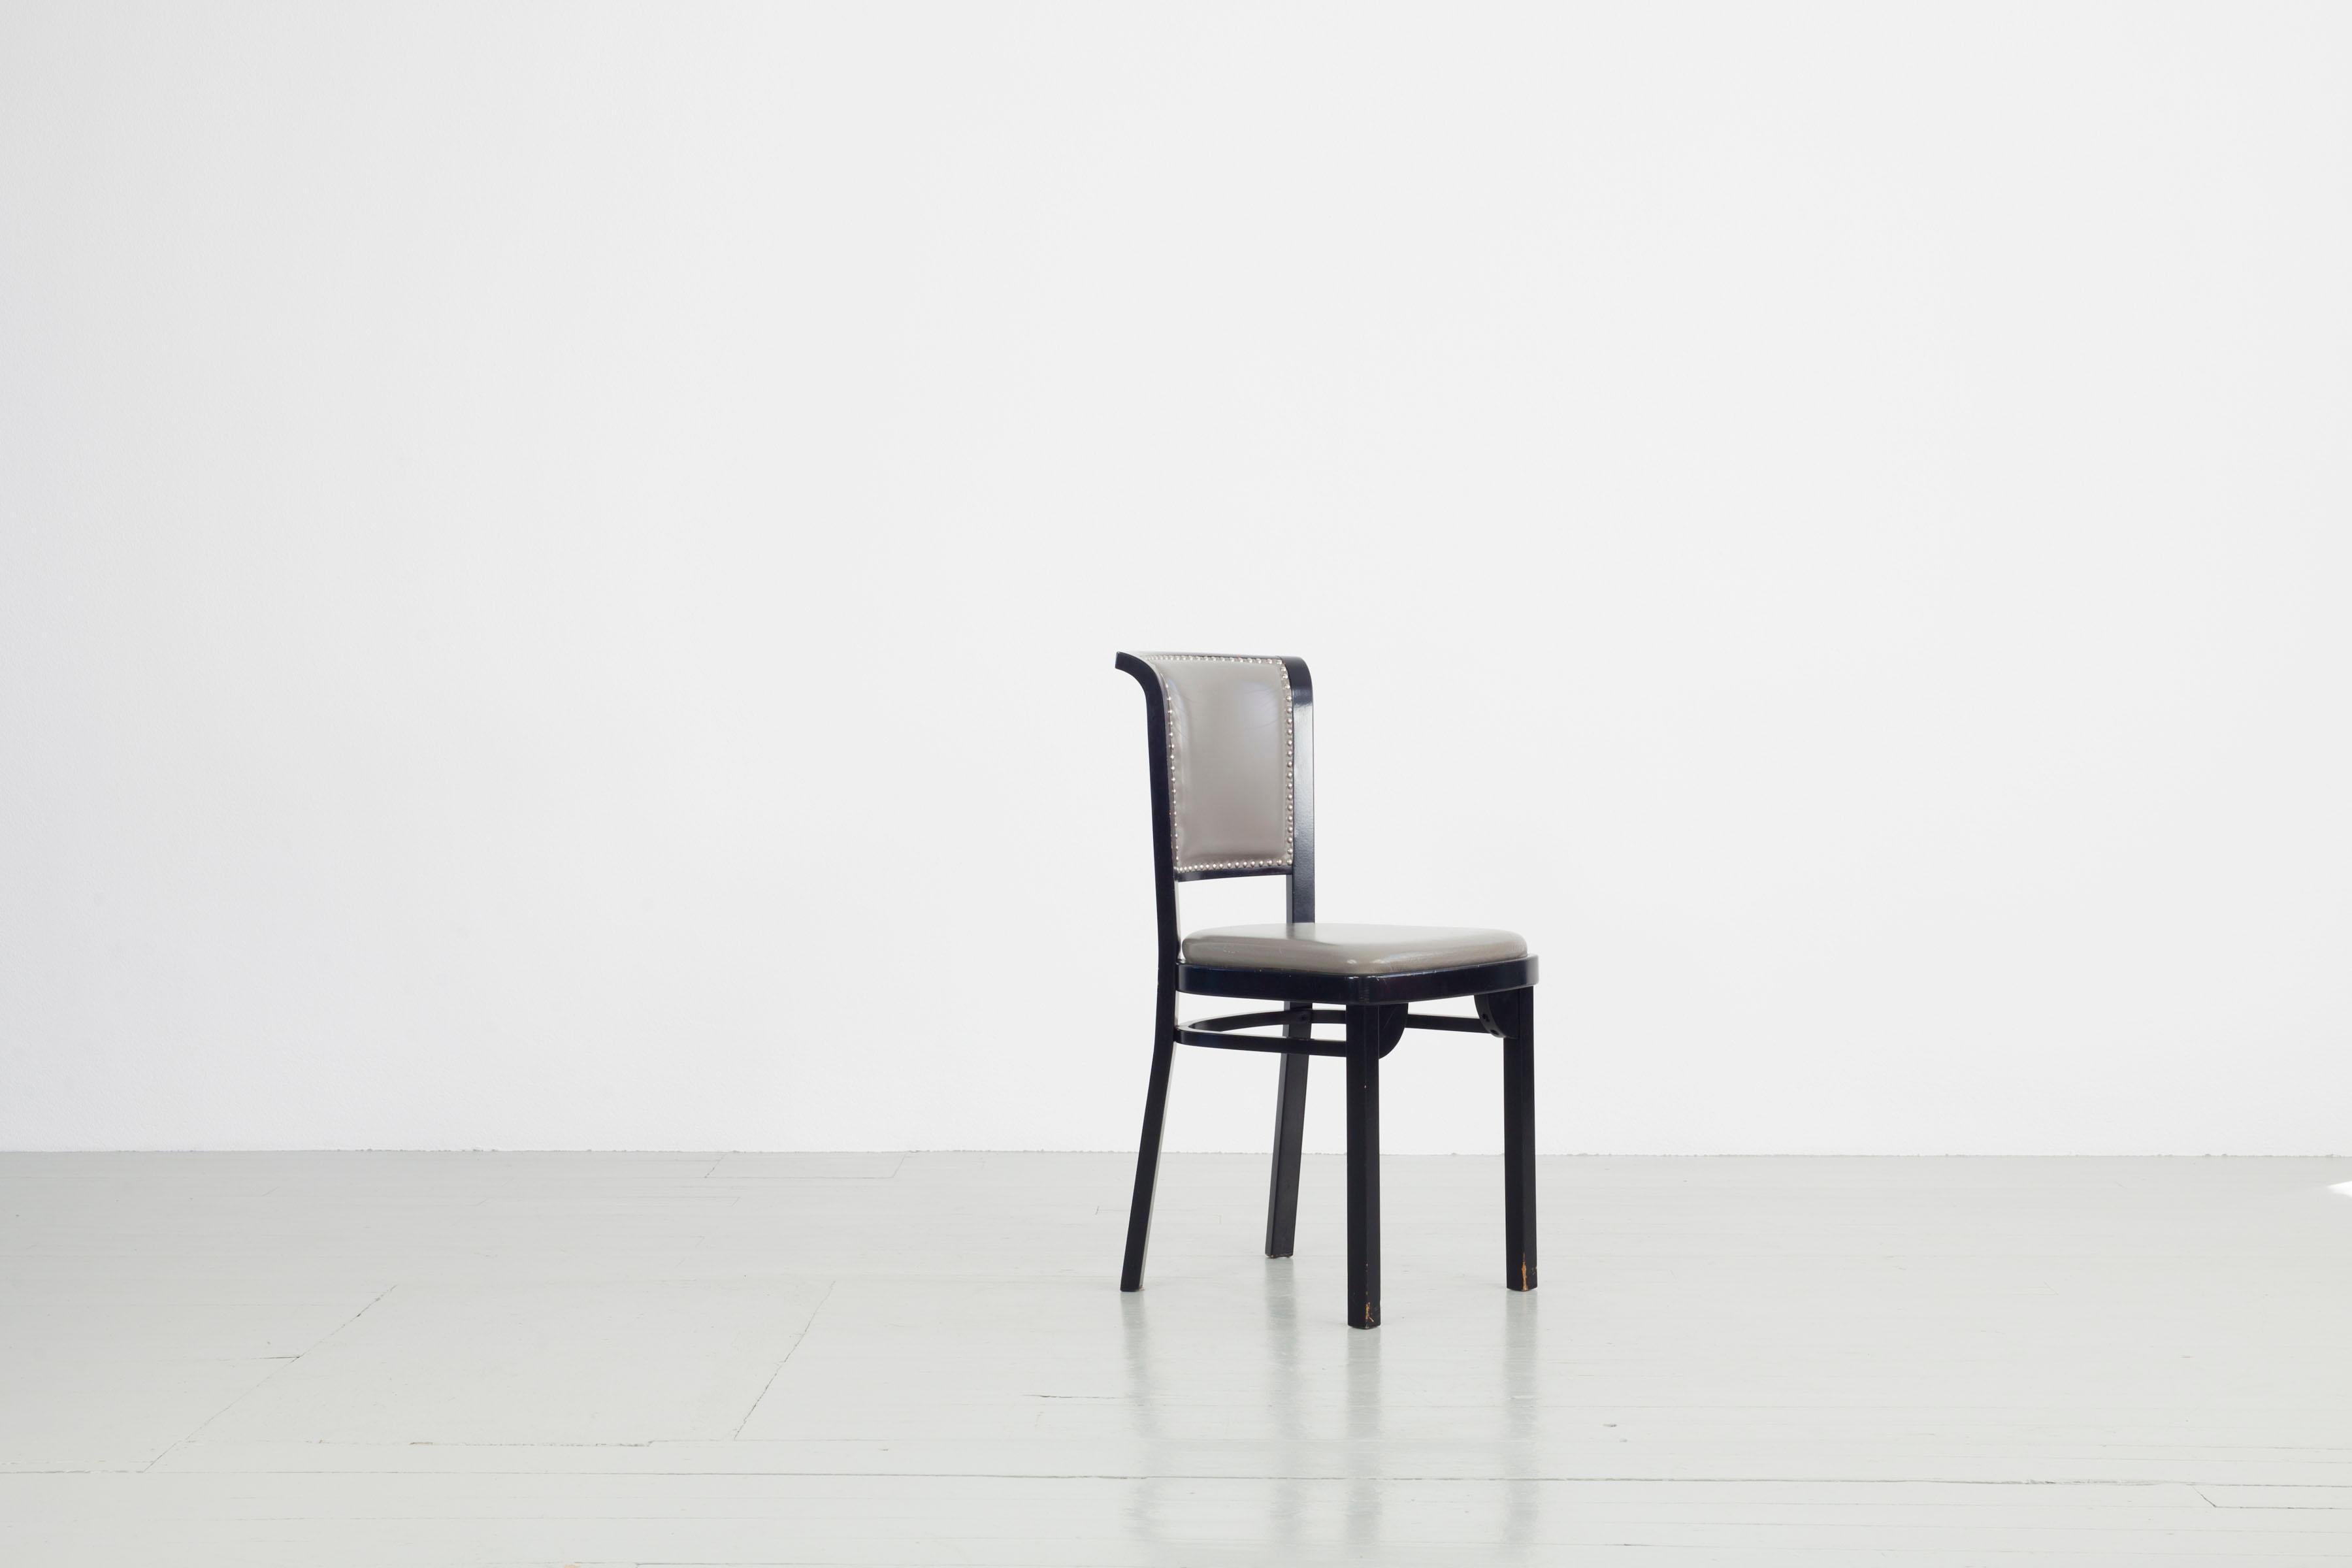 Cet ensemble de cinq chaises Thonet. Les chaises ont été fabriquées par Thonet en 1984 en bois laqué foncé, avec une assise et un dossier gris et des clous de tapisserie argentés. Une nouvelle housse est nécessaire, sinon les chaises sont en bon